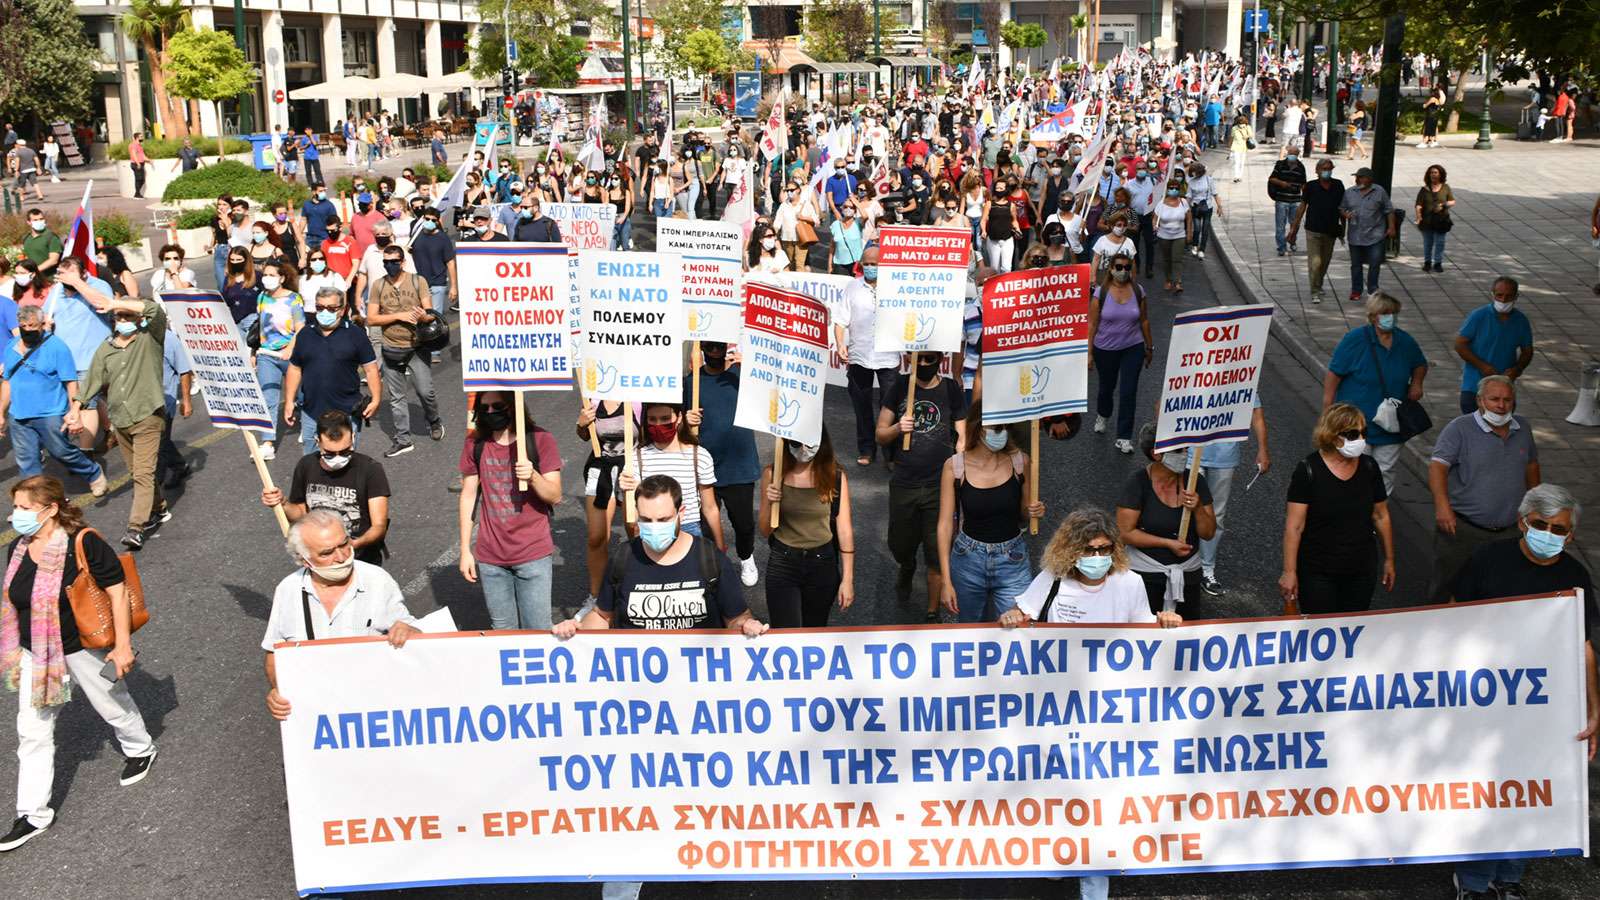 Казахстан против греции. Митинги в Греции. Митинг в Греции против НАТО. Греция митинг в поддержку. Протестующие в Греции.